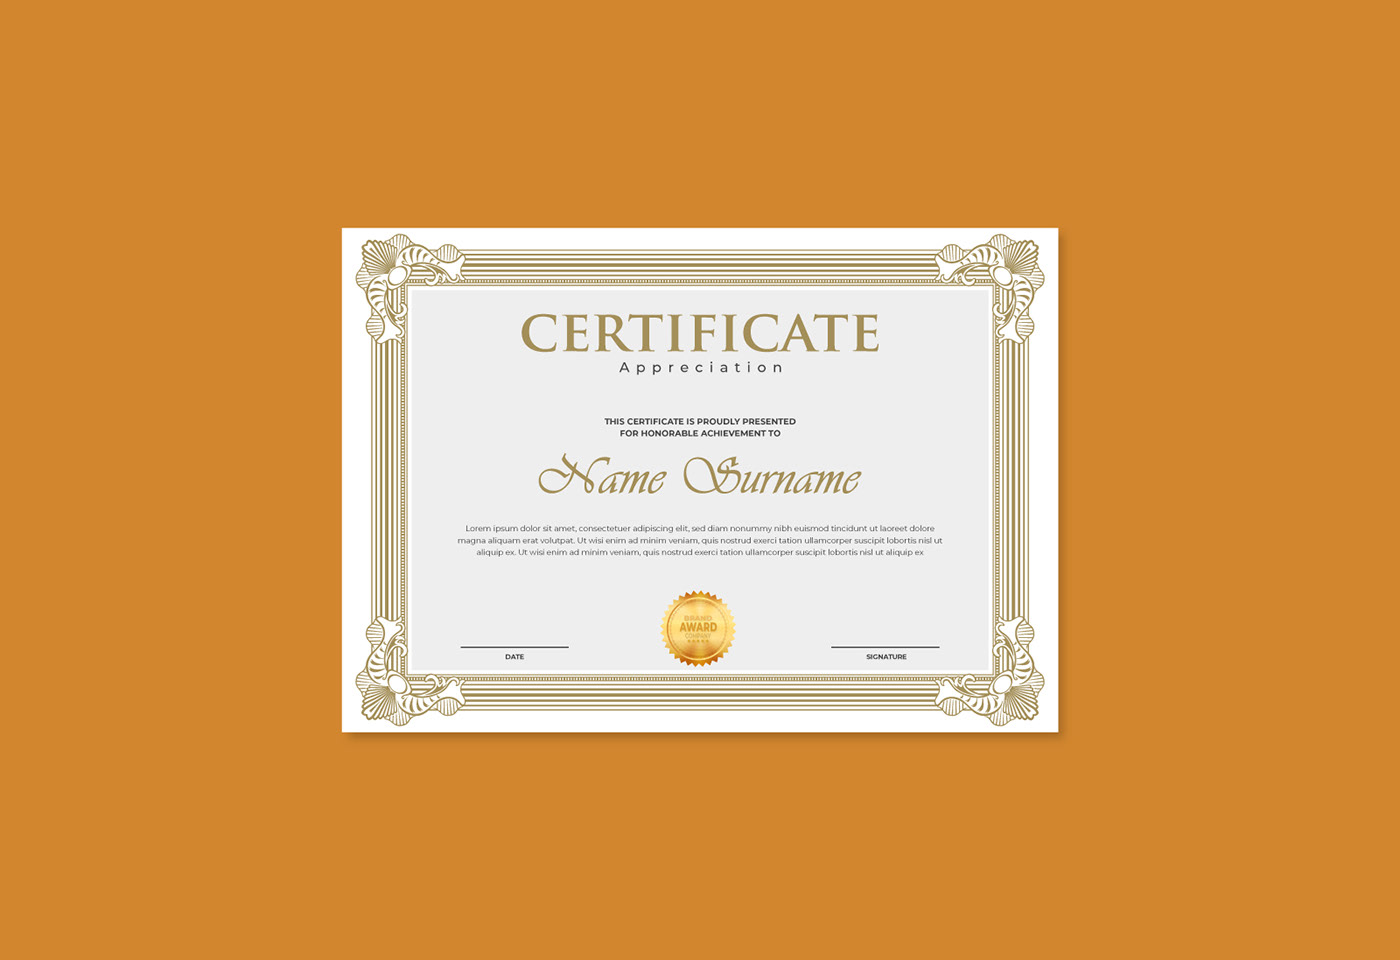 certificate award certificate Diploma Certificate diploma award Appreciation gift certificate certificate template gift cards custom certificate